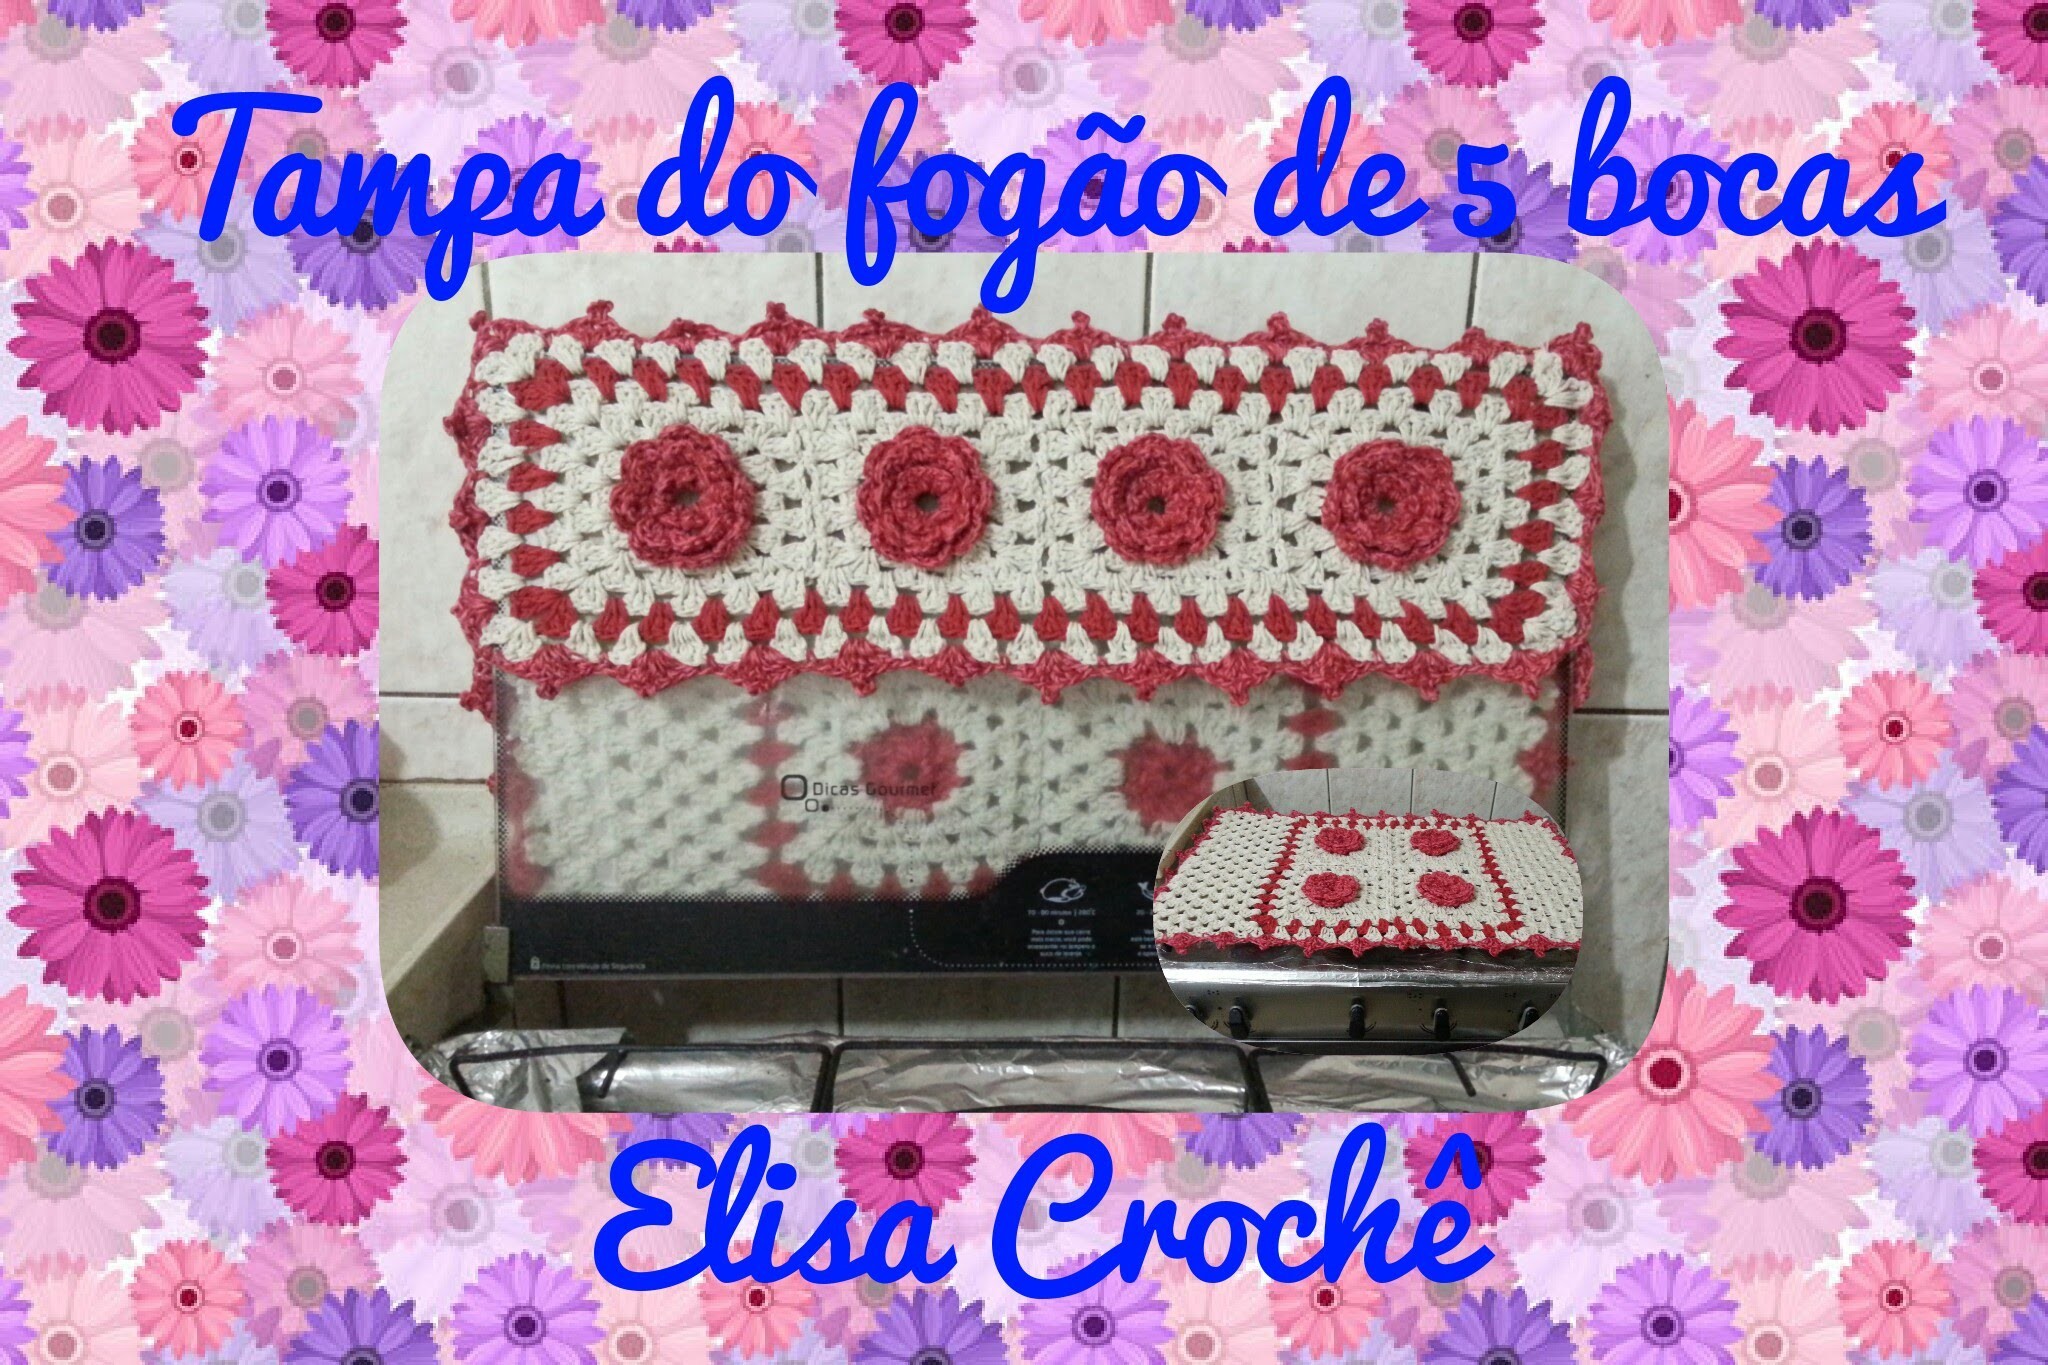 Capa para fogão de 5 bocas ( 2ª parte final) # Elisa Crochê